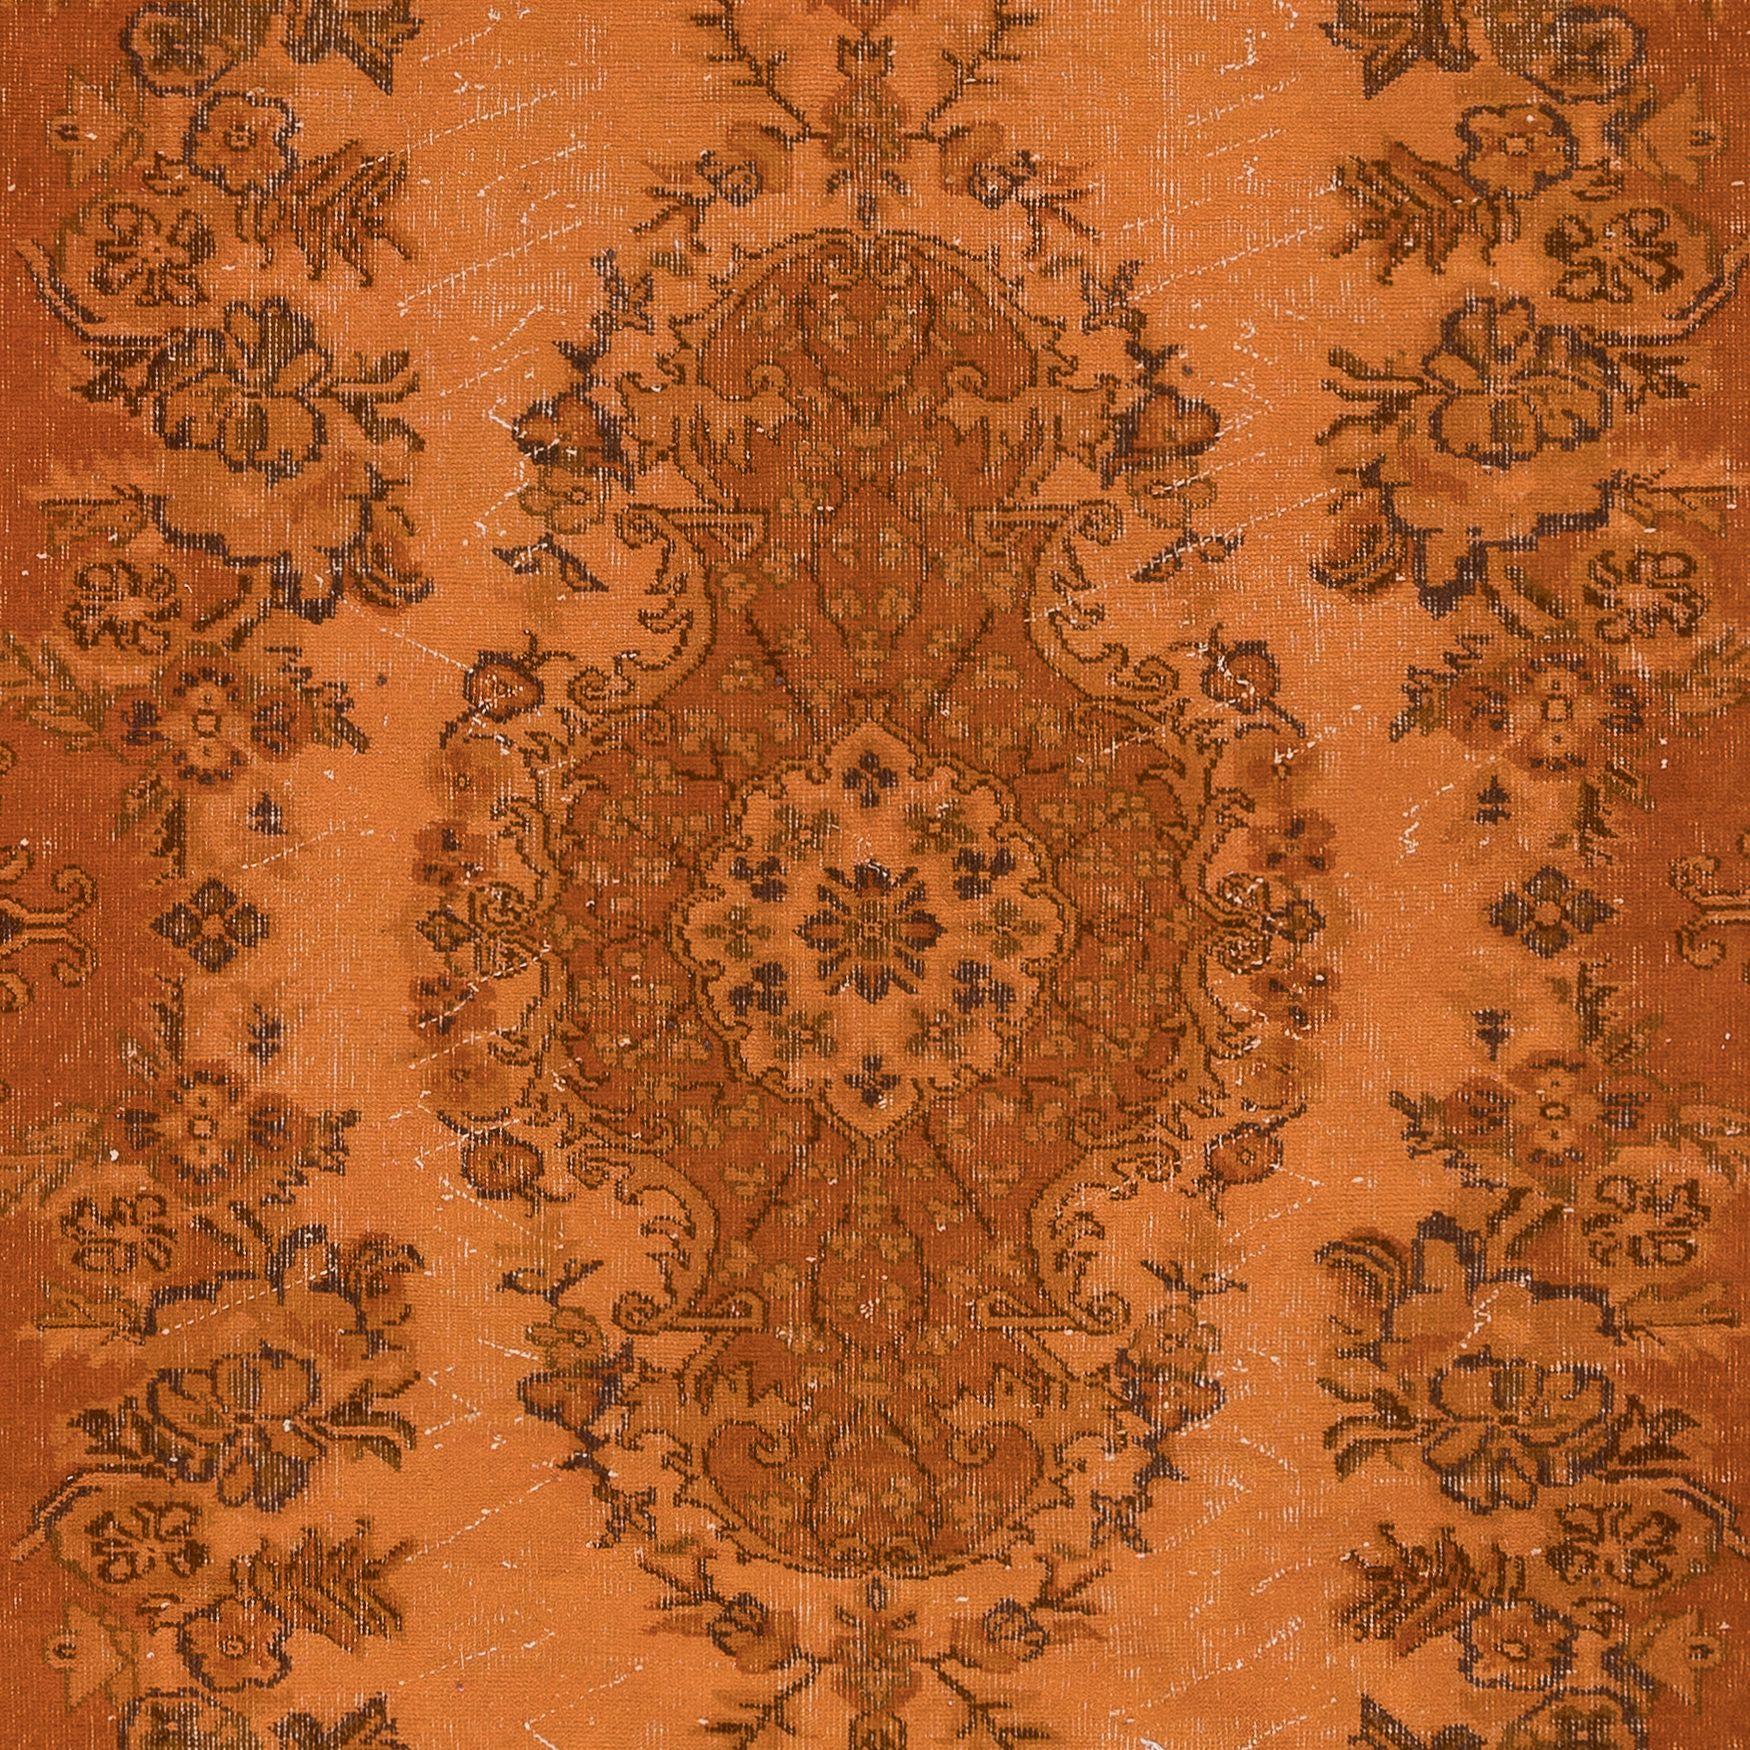 Hand-Knotted 5.6x9.2 Ft Handmade Turkish Orange Rug, Modern Medallion Design Carpet For Sale